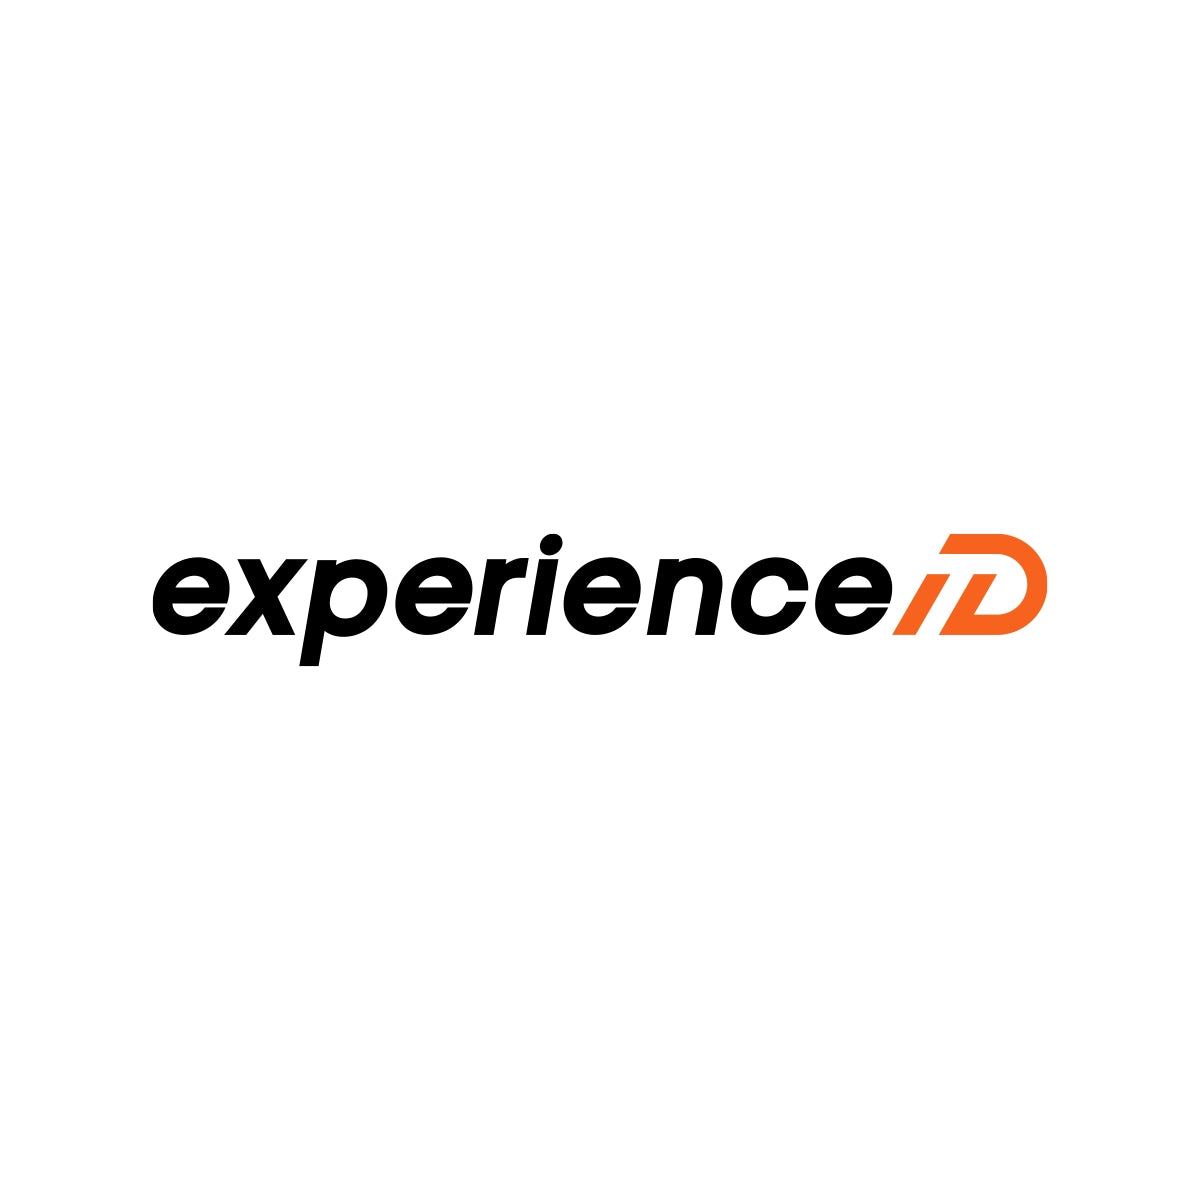 experienceid.com